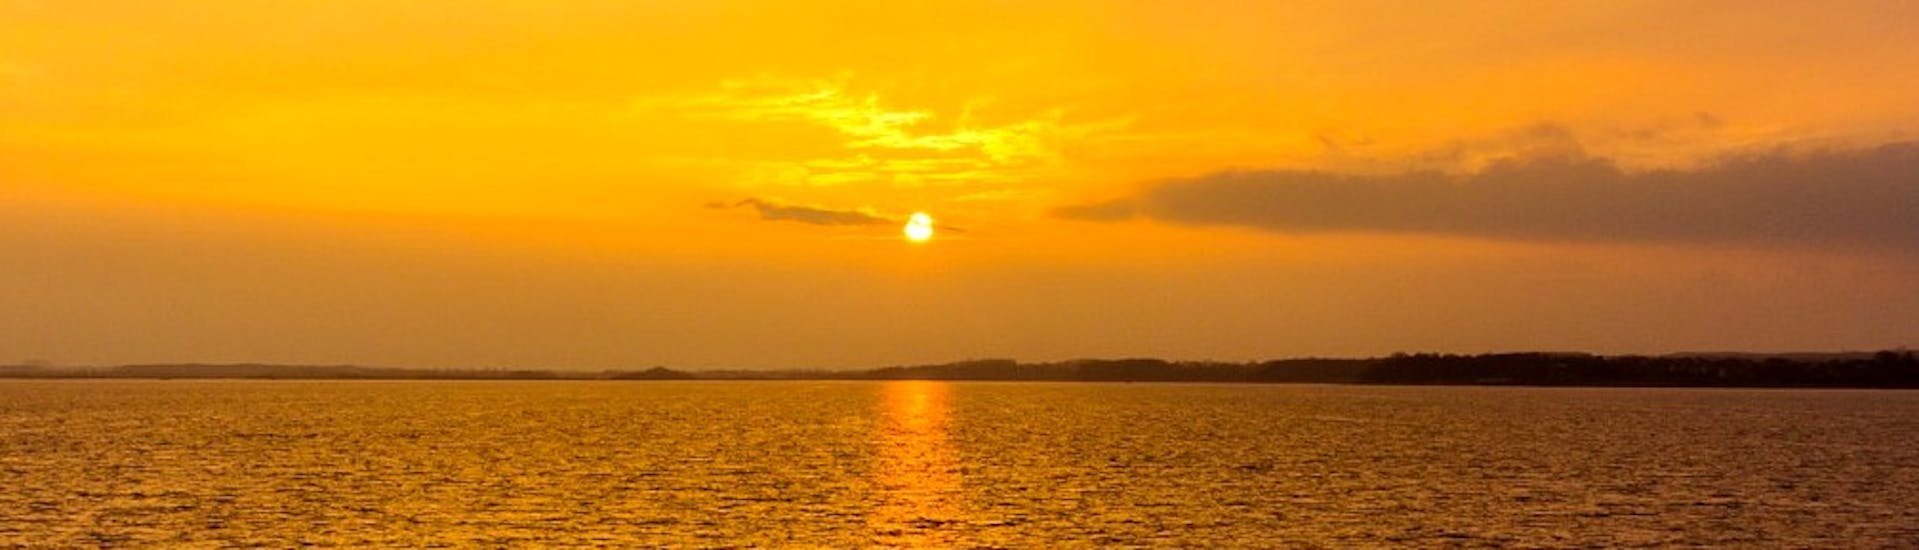 De zon gaat onder boven de Atlantische Oceaan en schildert het turquoise water in een heldere rode tint tijdens een zonsondergang boottocht van Lagos naar Carvoeiro met Funtastik Tours Lagos.